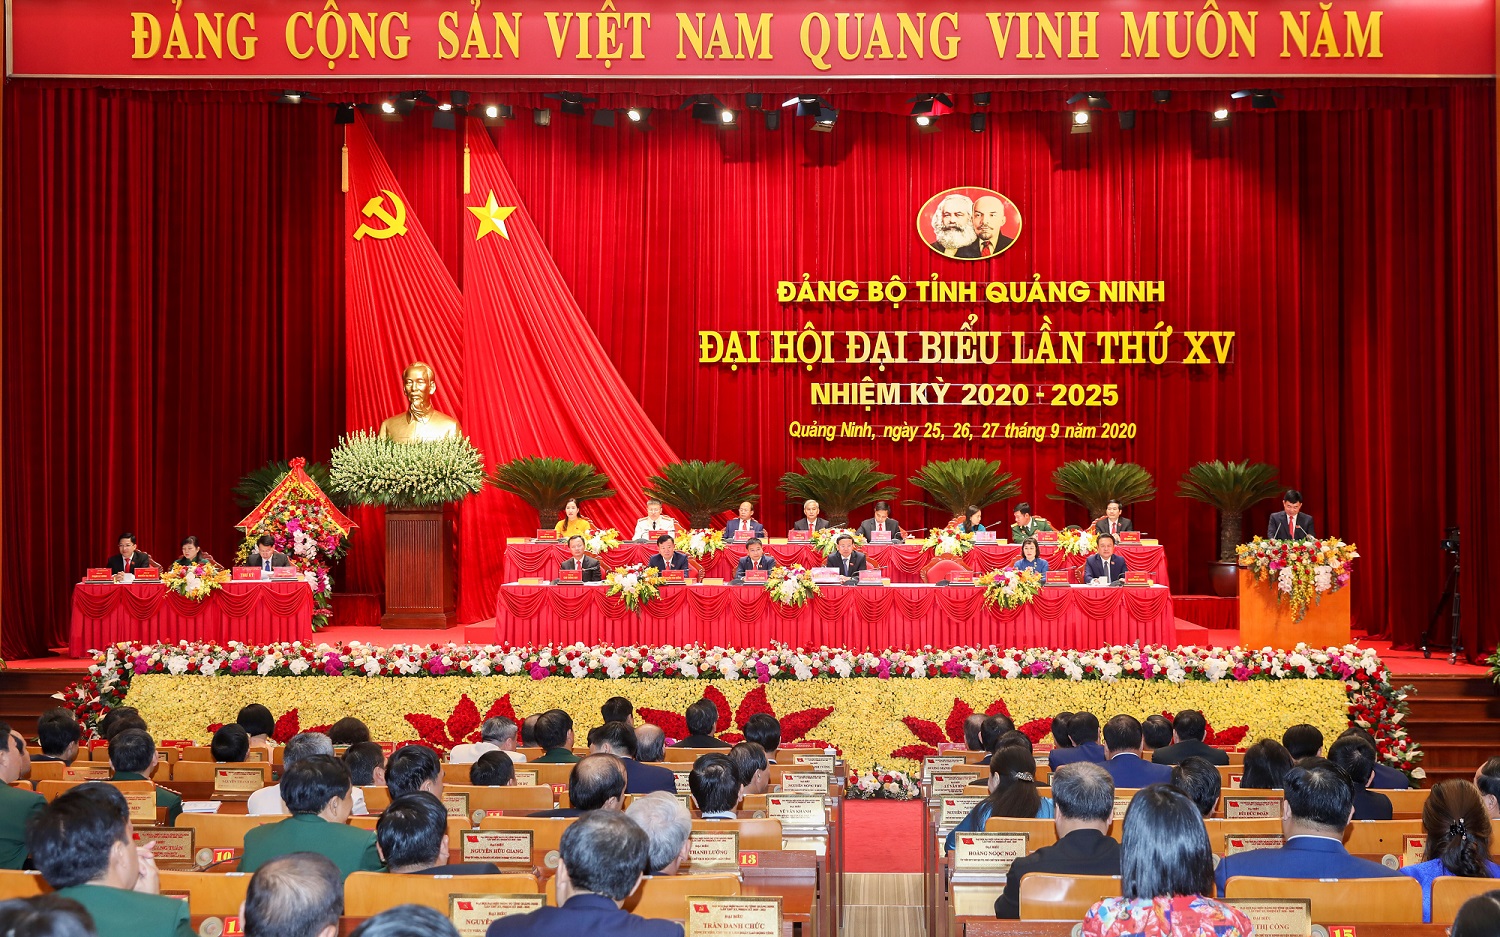 Quang canh Dai hoi sang ngay 27 -9.jpg